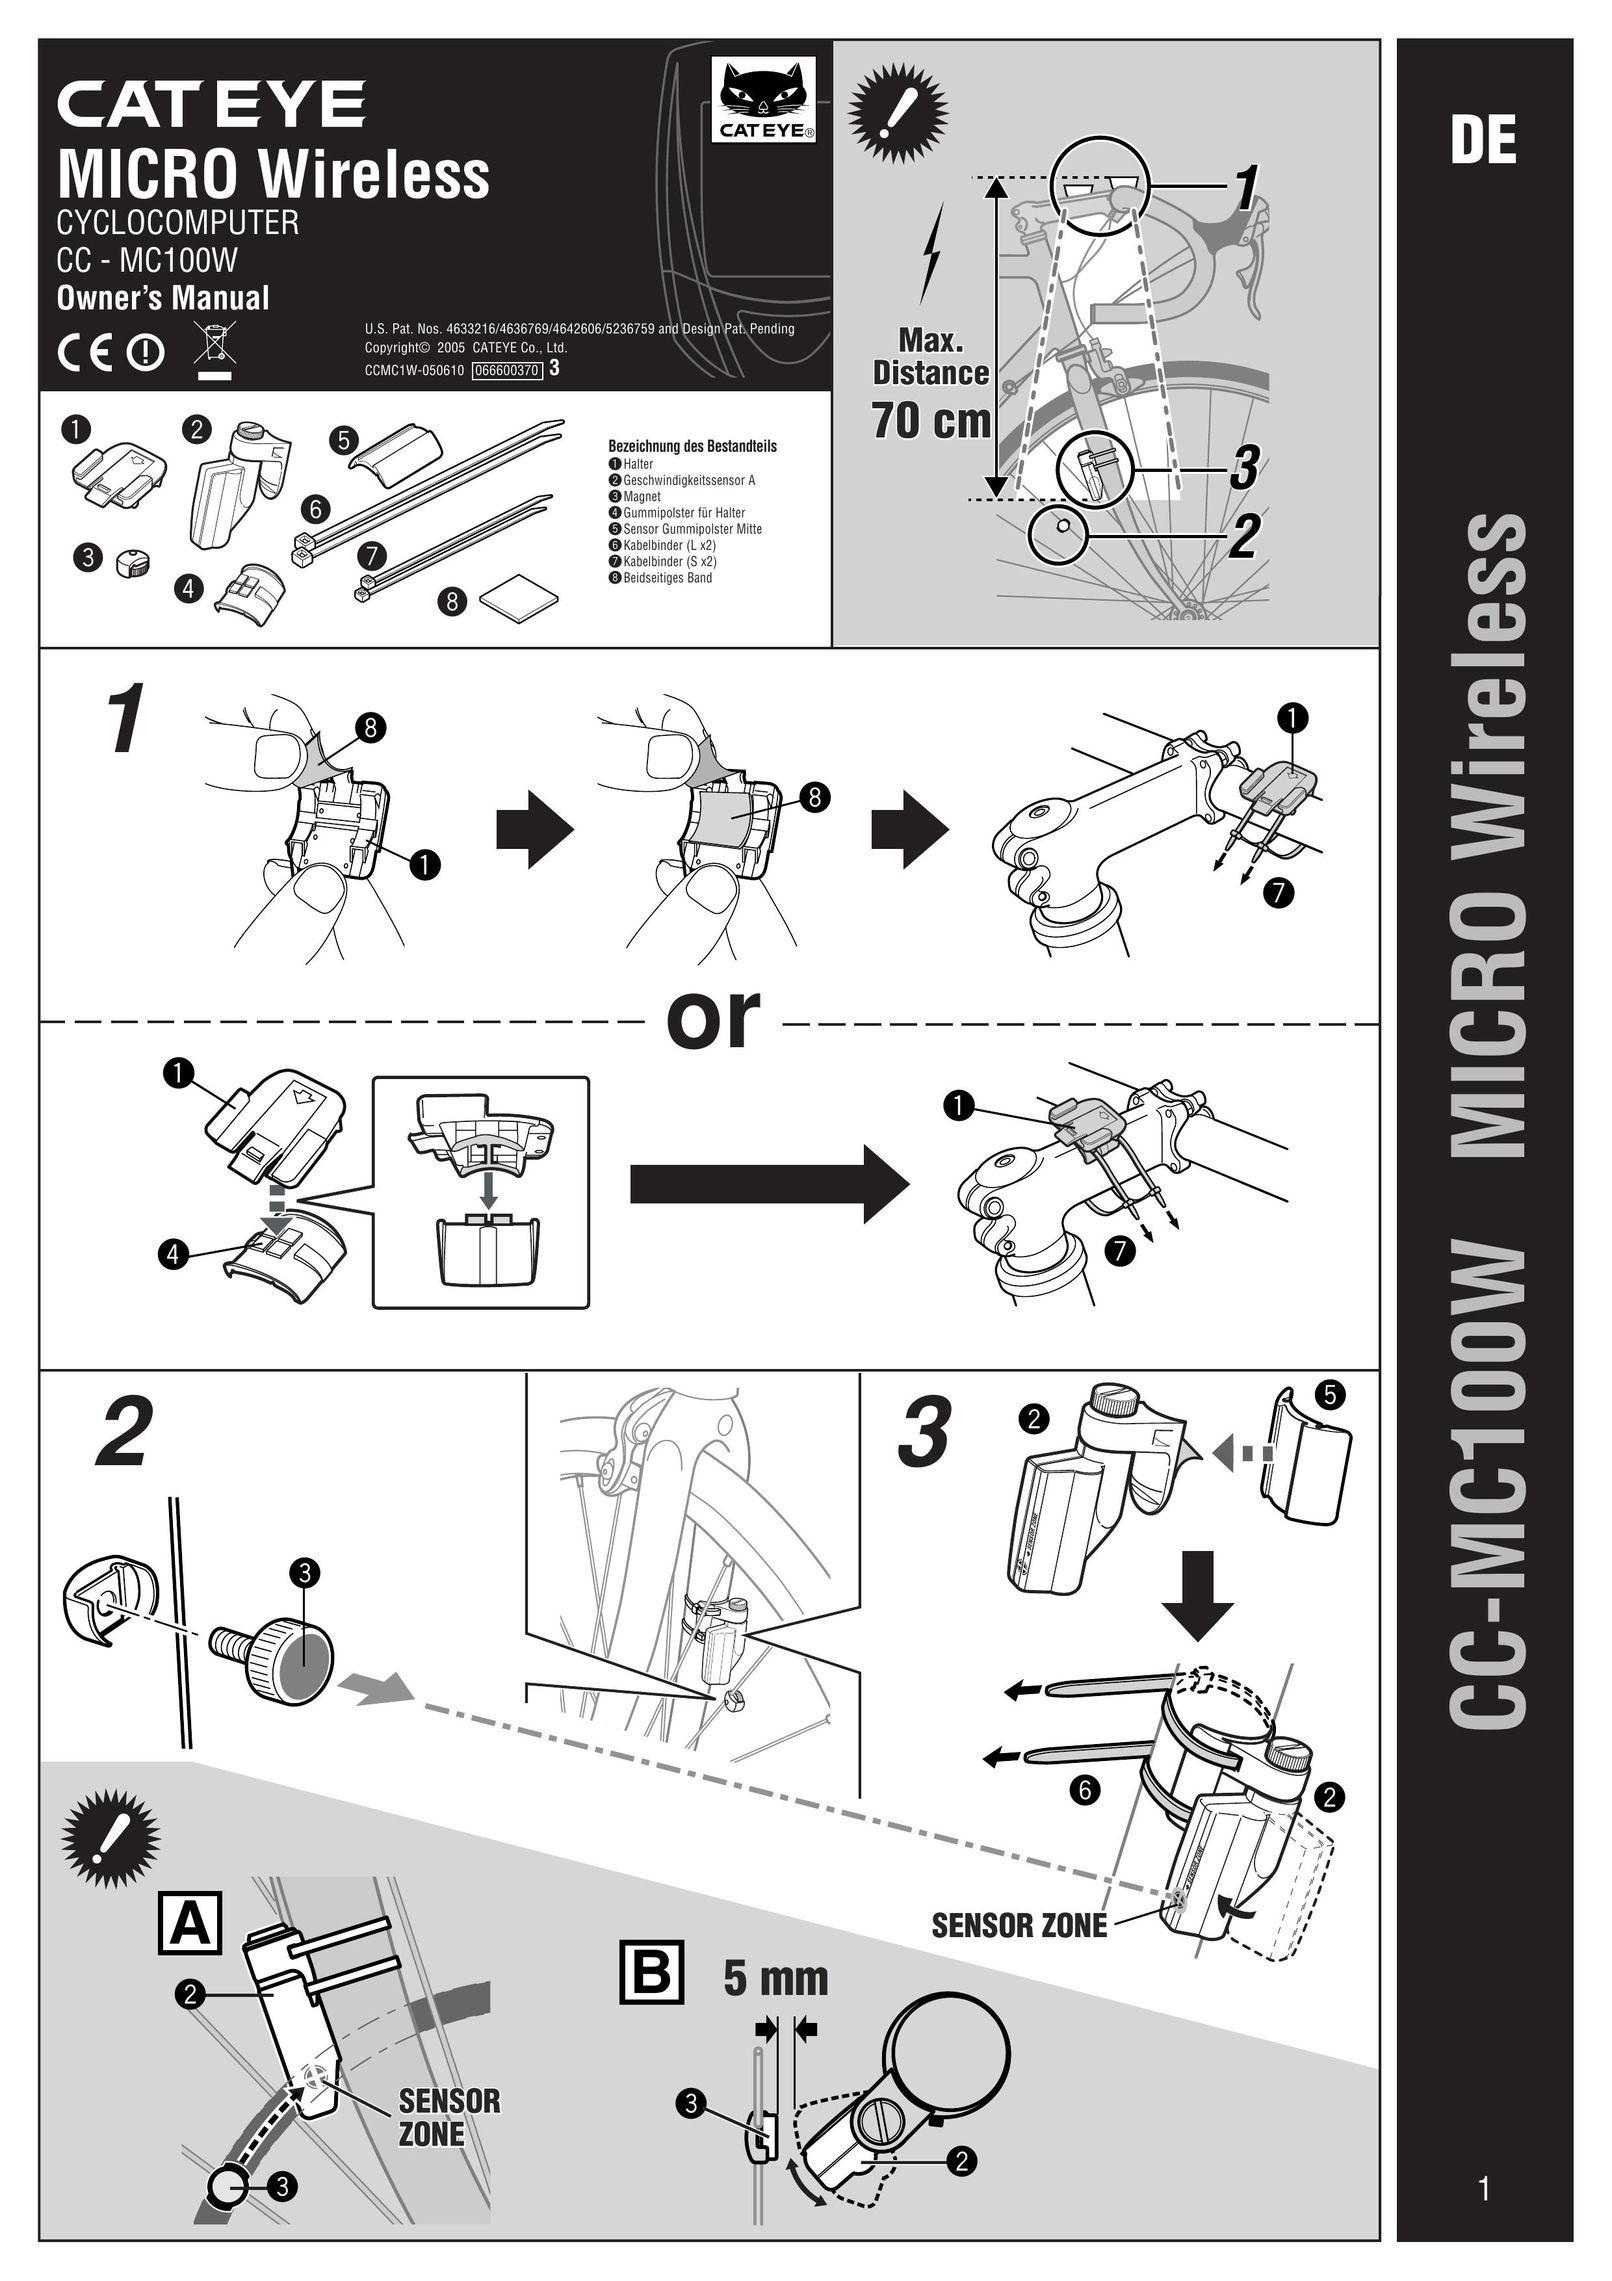 Cateye CC-MC100W Cyclometer User Manual